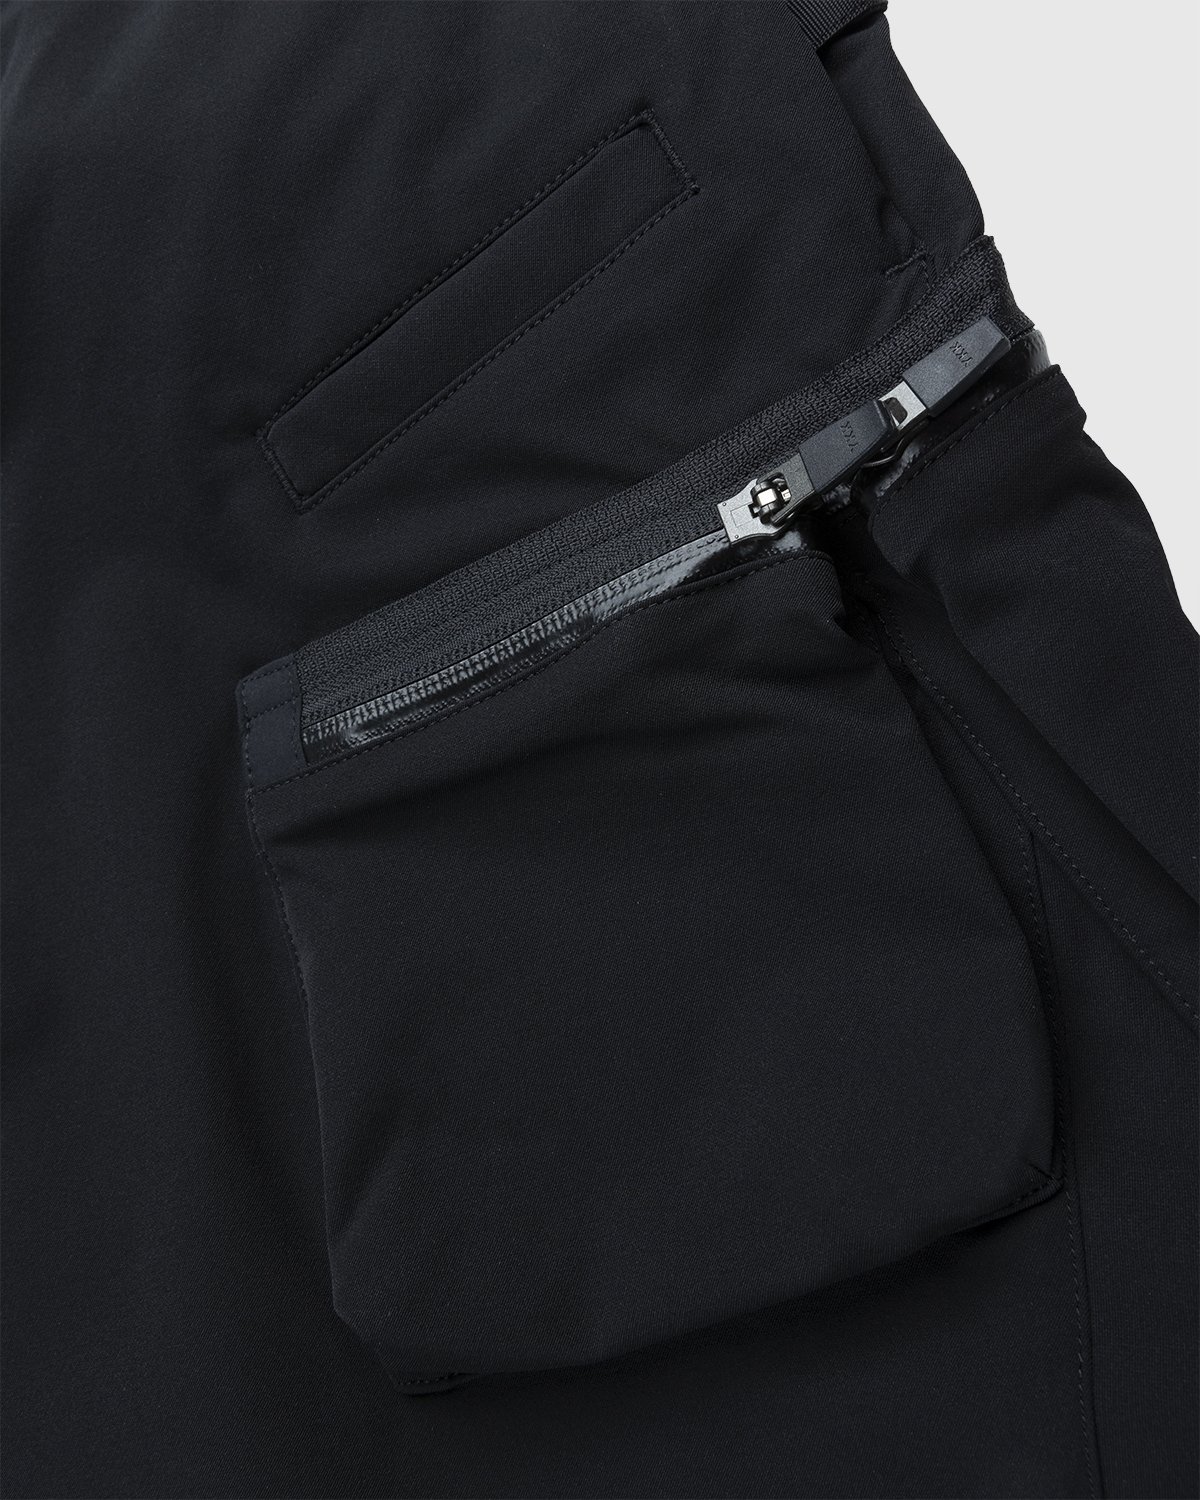 ACRONYM - P41-DS Pant Black - Clothing - Black - Image 3